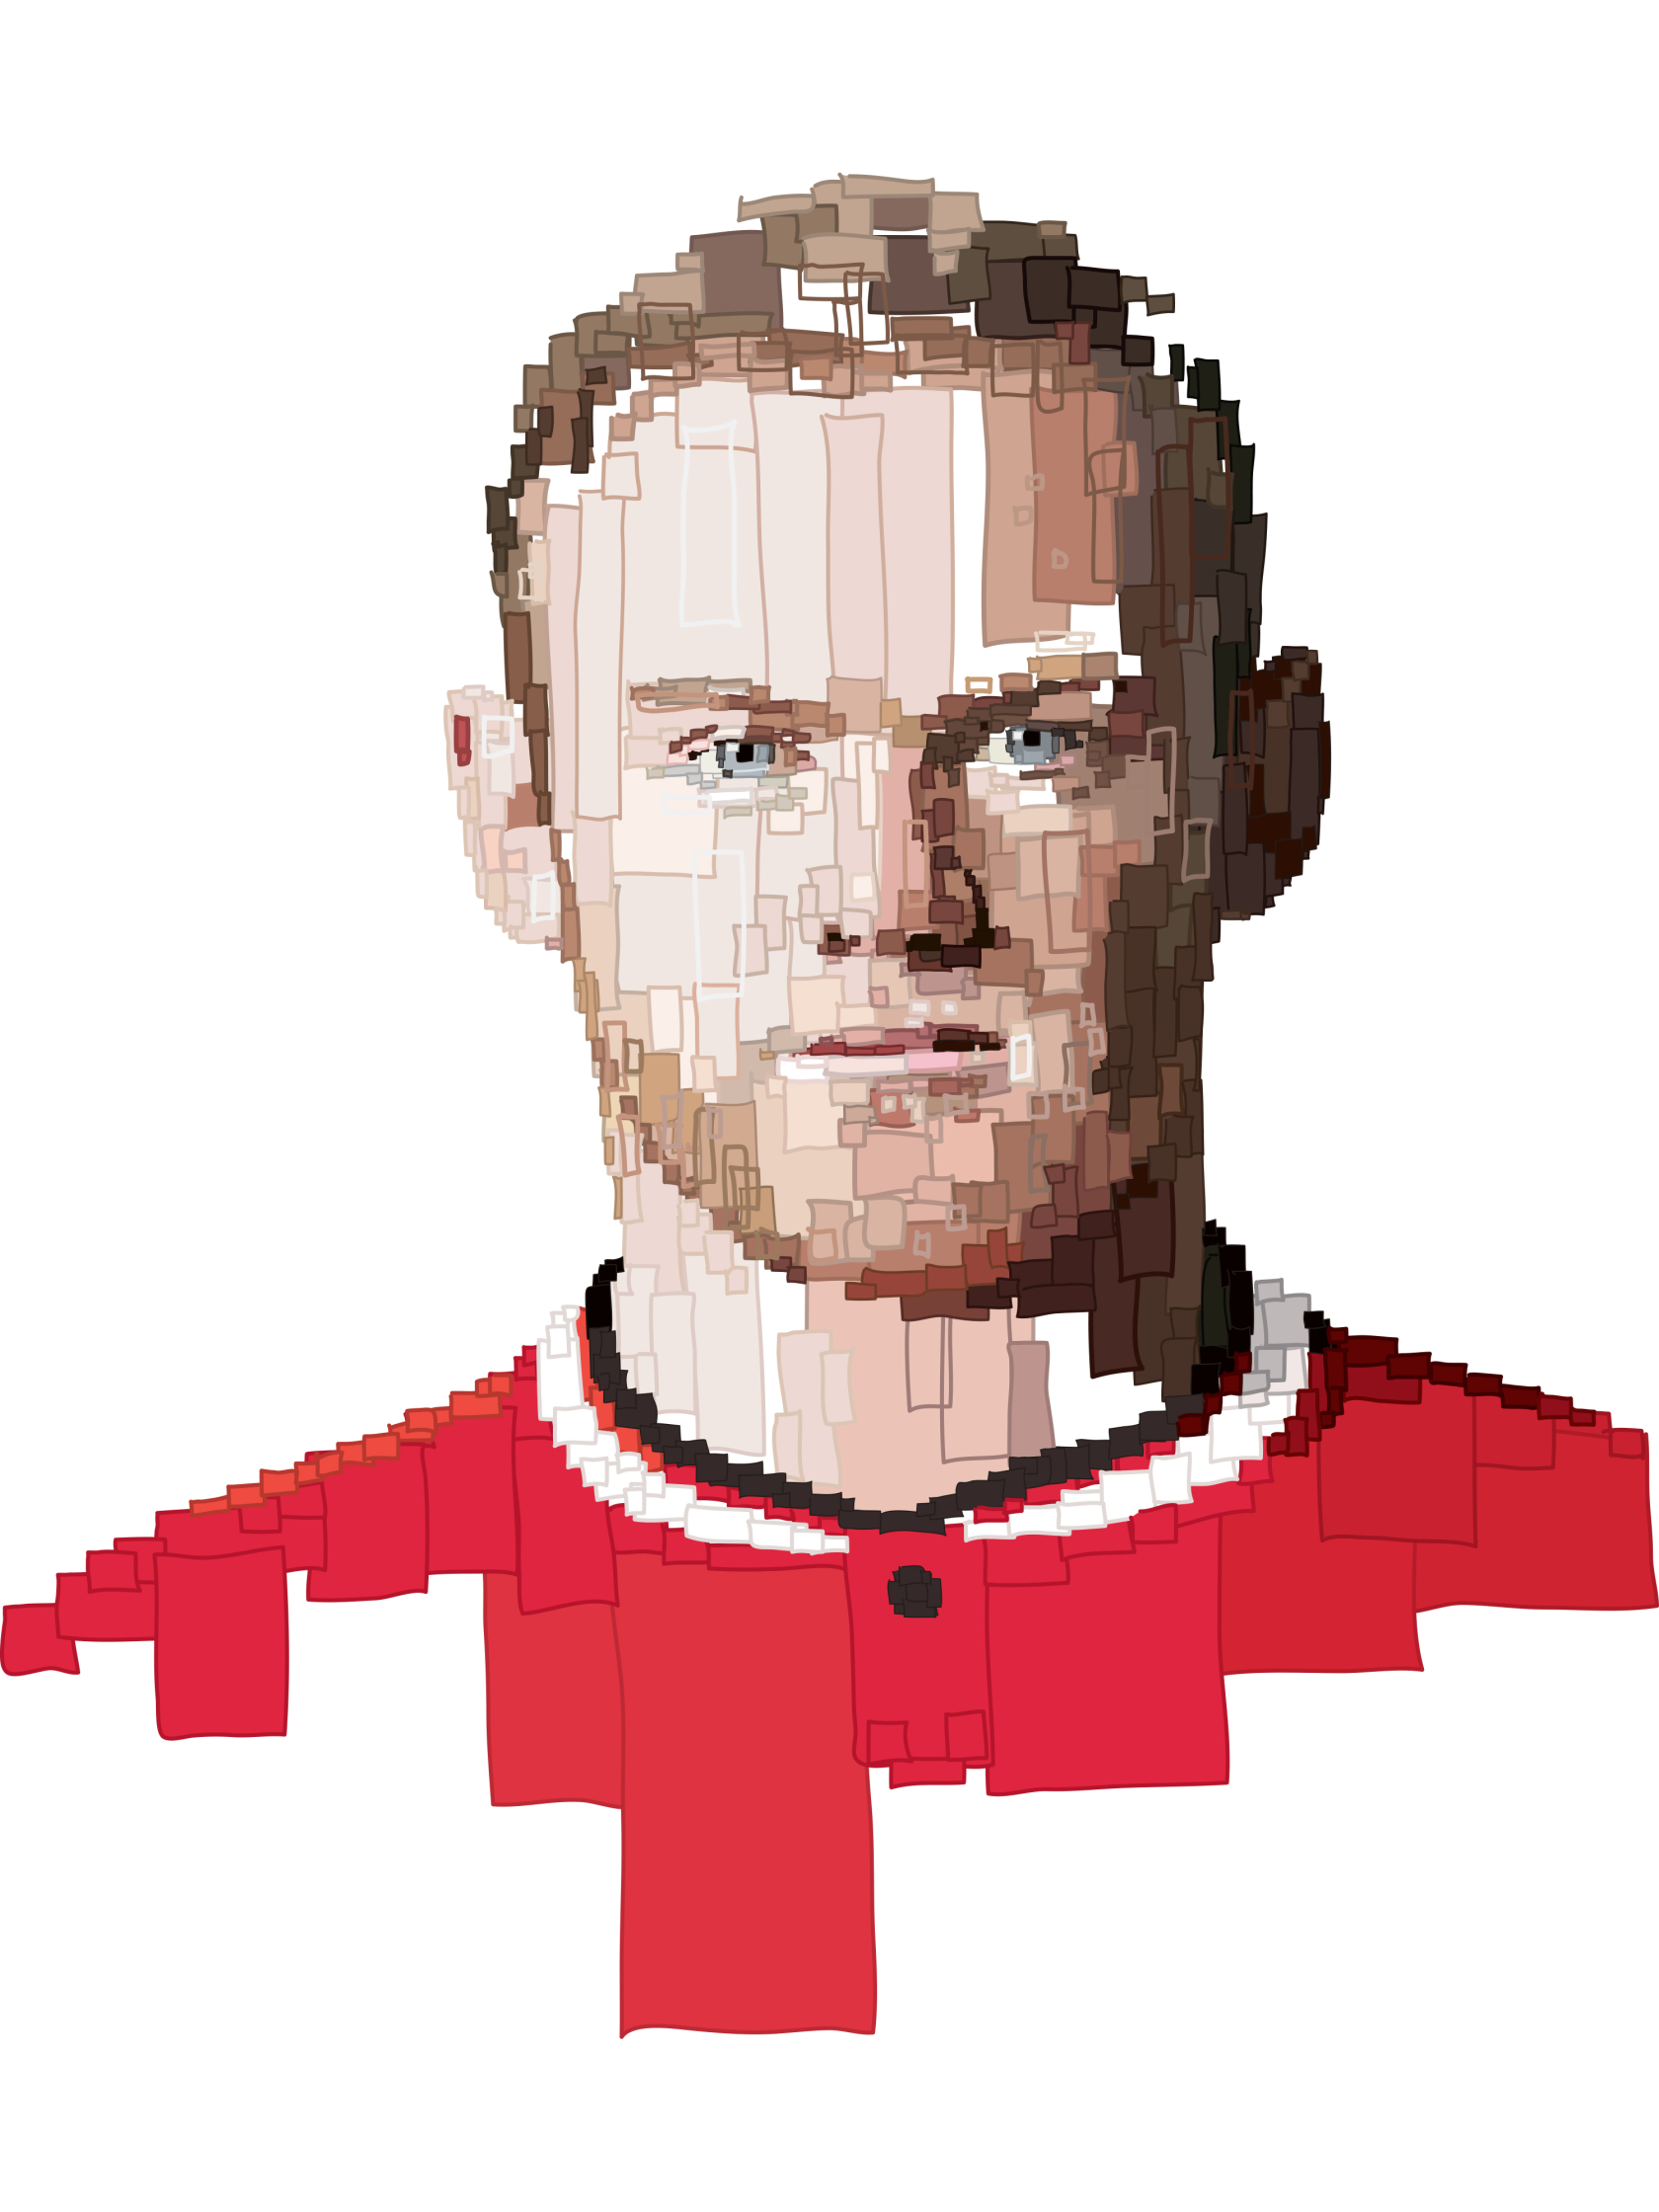 Rooney Manchester Utd Captains room.jpg